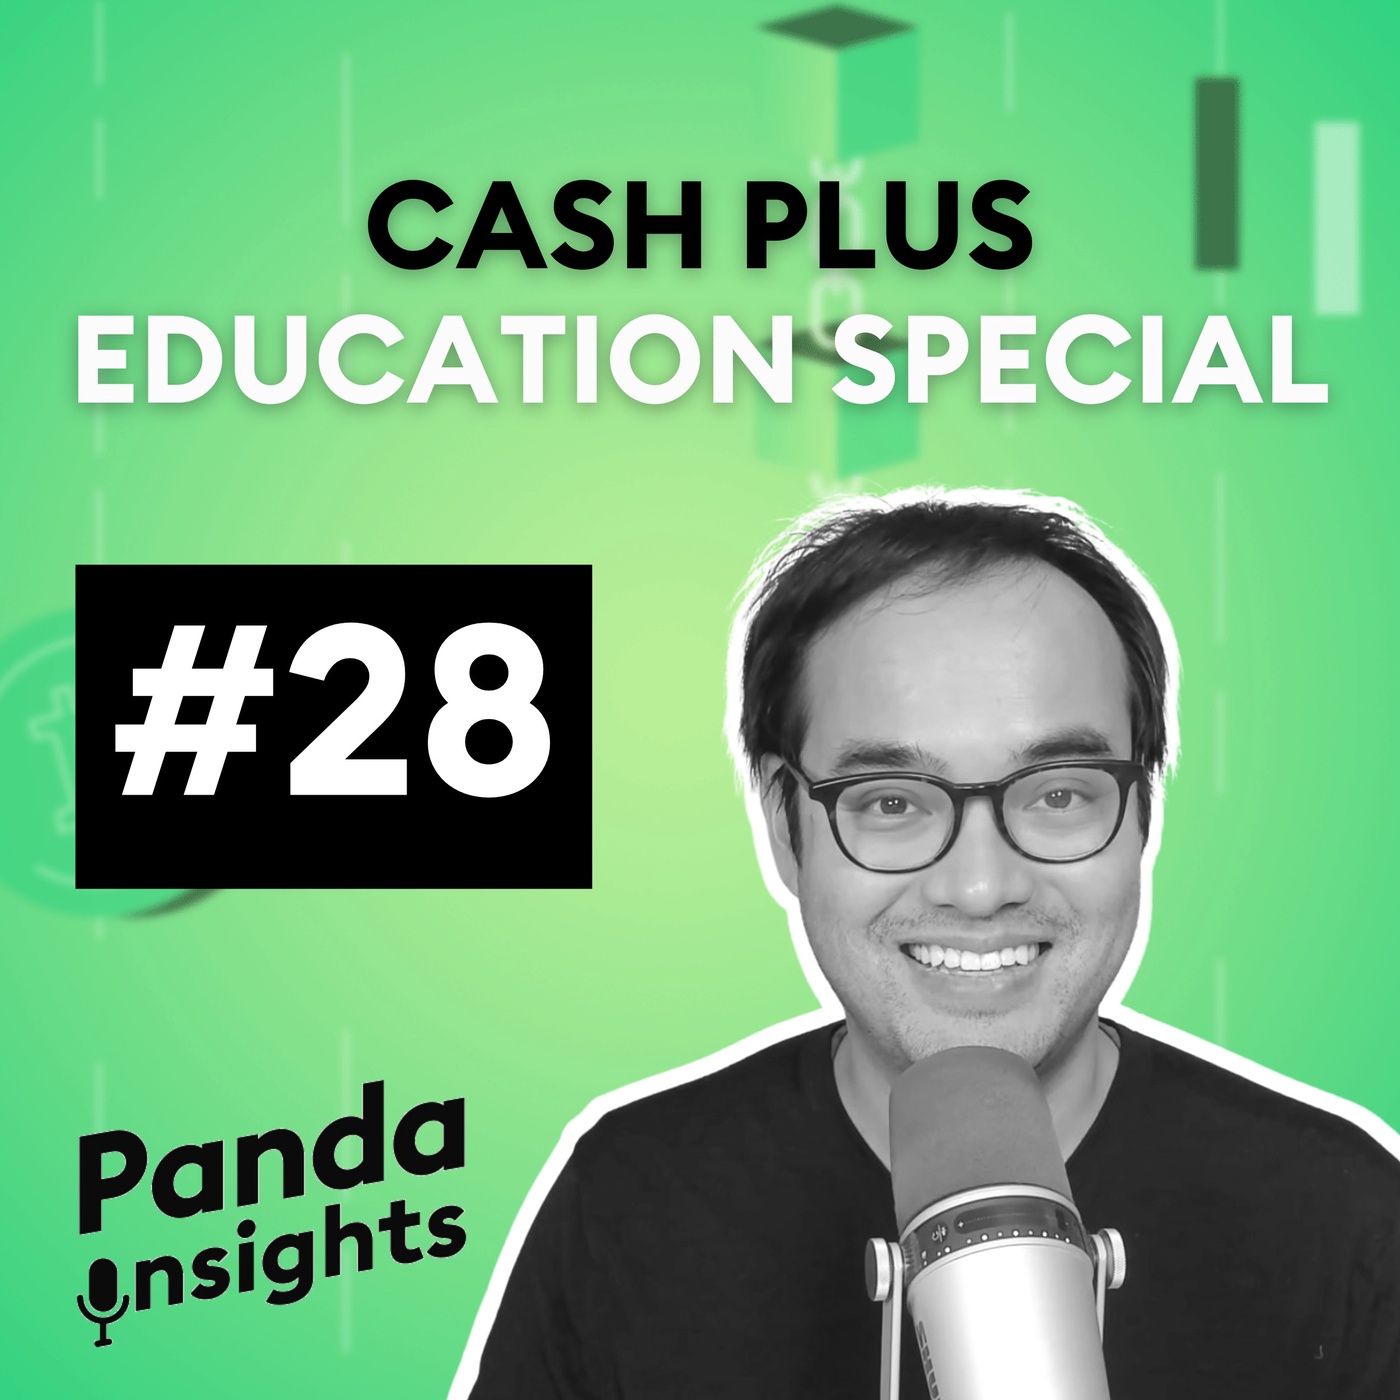 Cash Plus Education Special